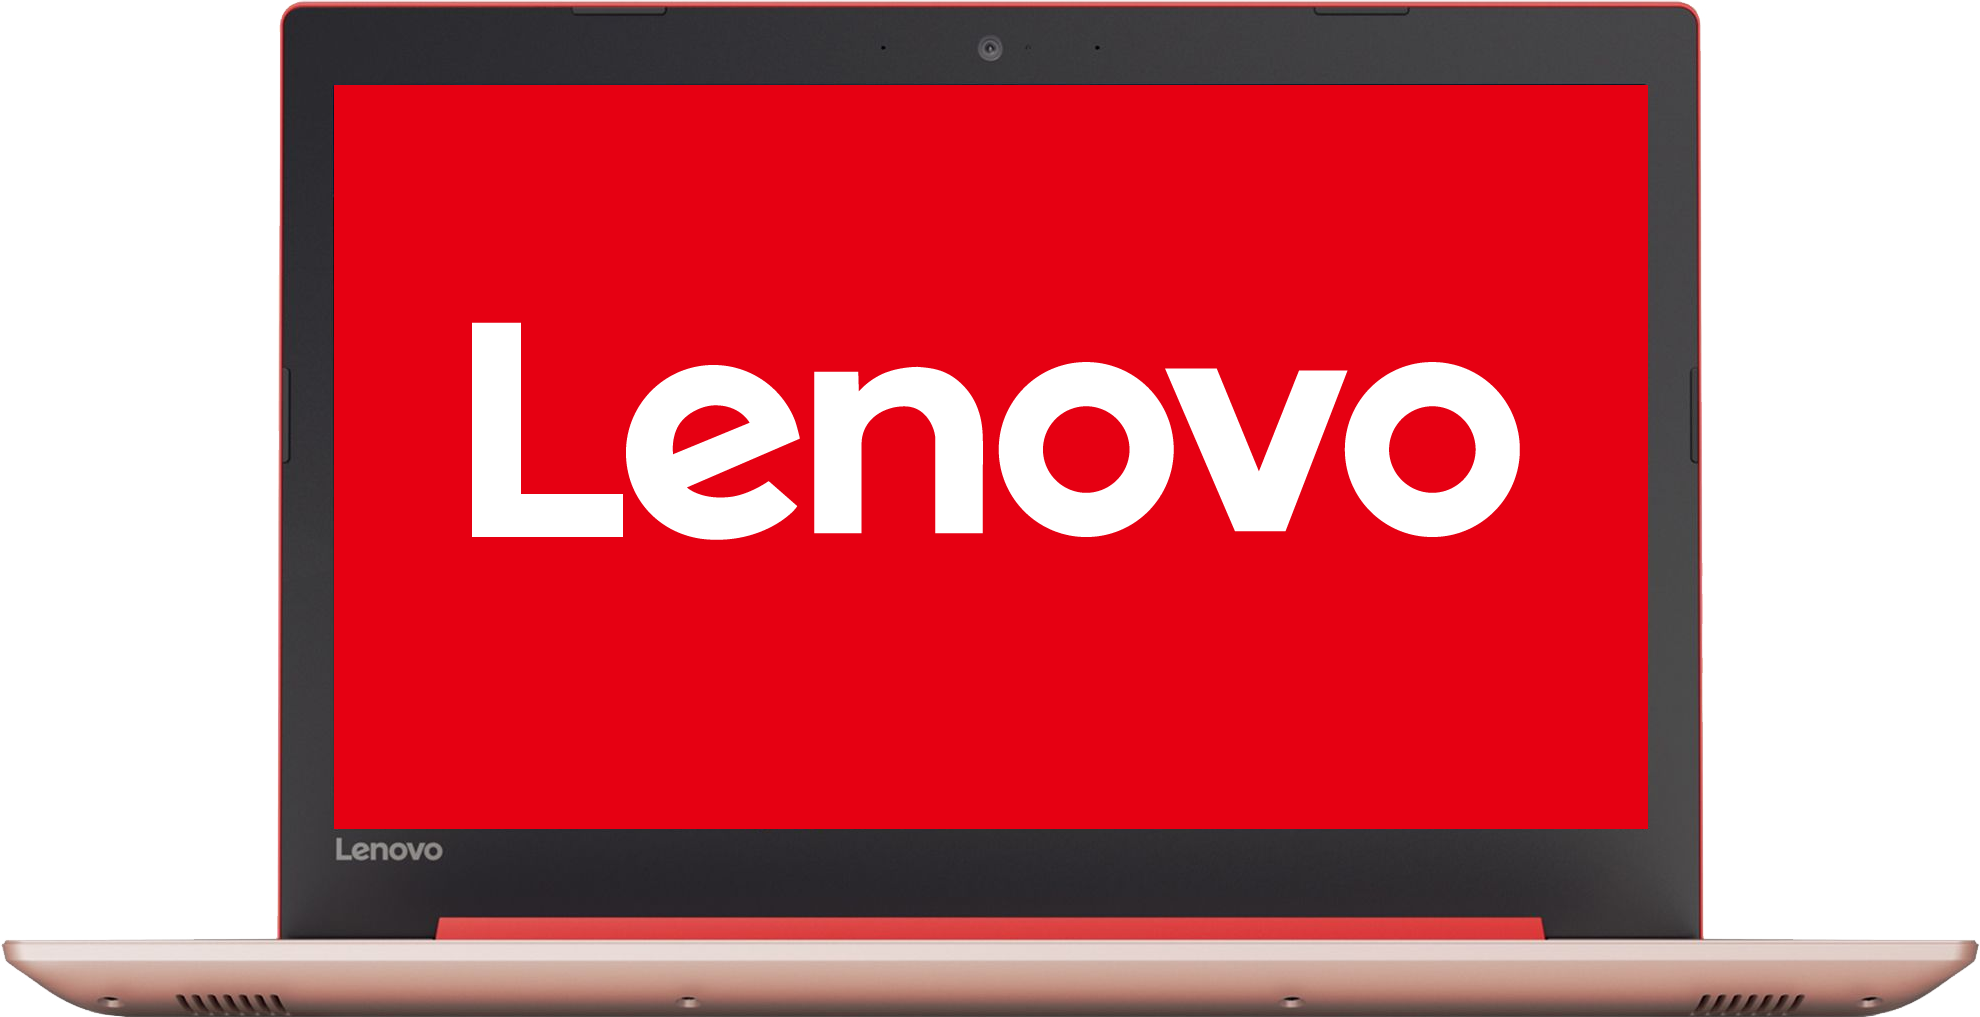 OEM logo Lenovo 120